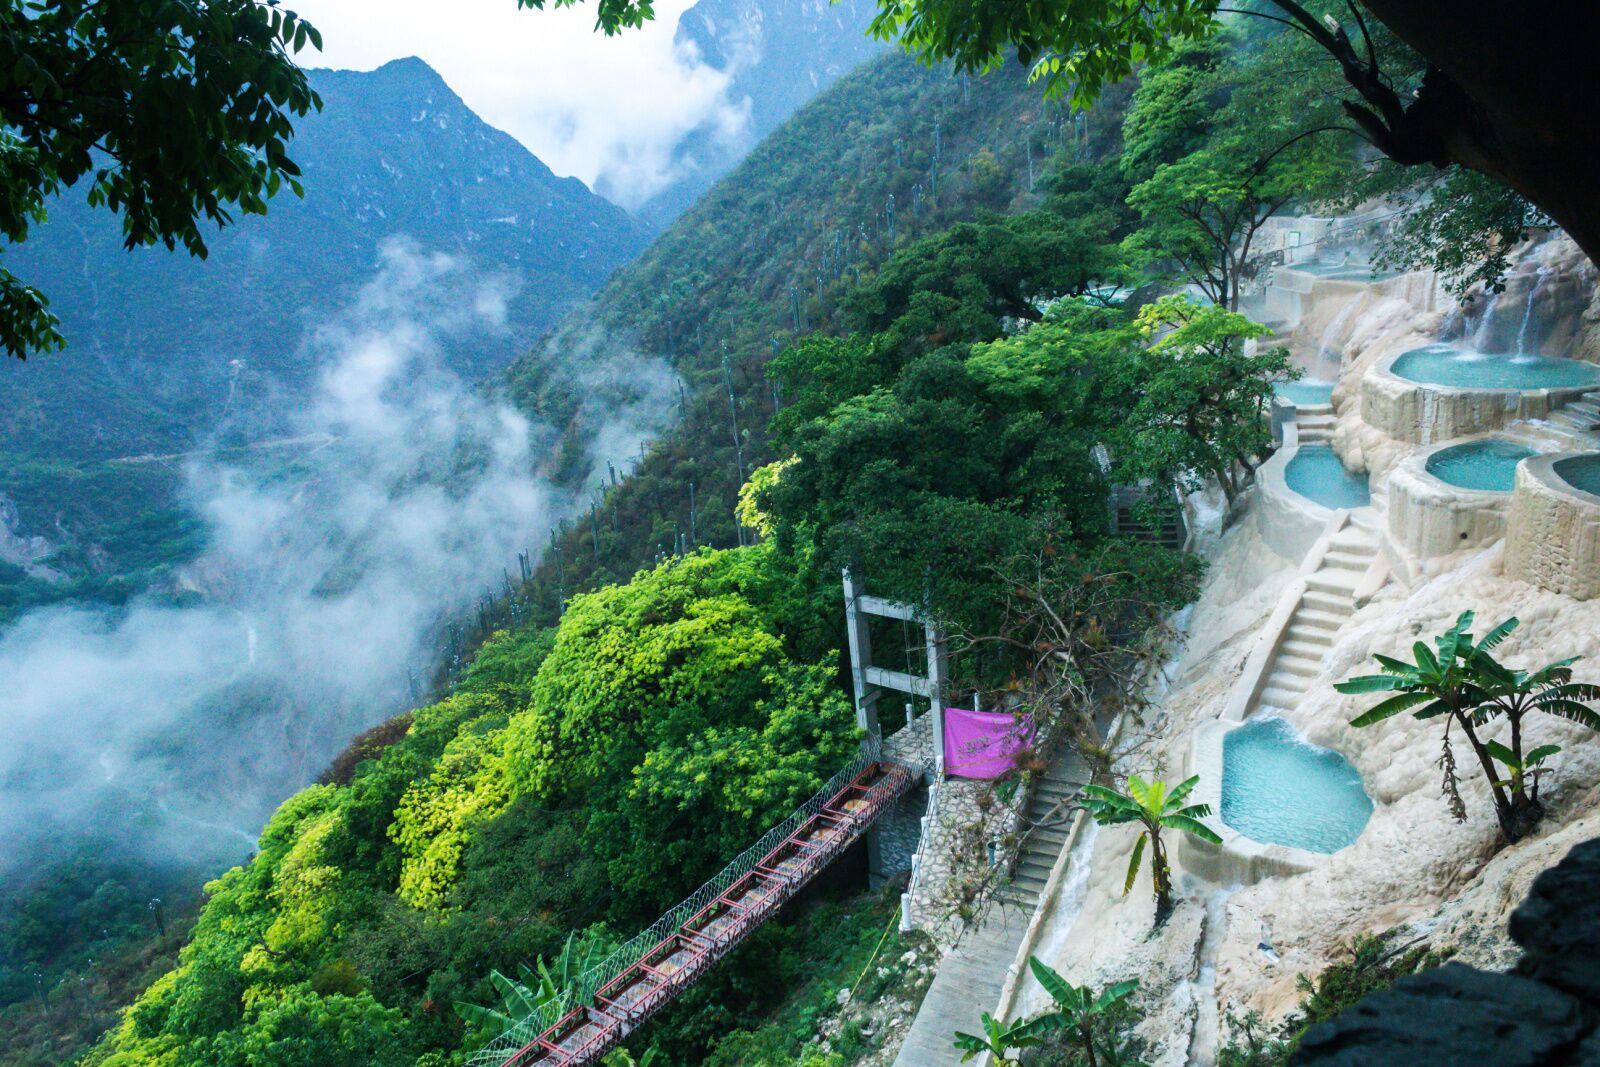 Las grutas Tolantongo hot springs in Mexico